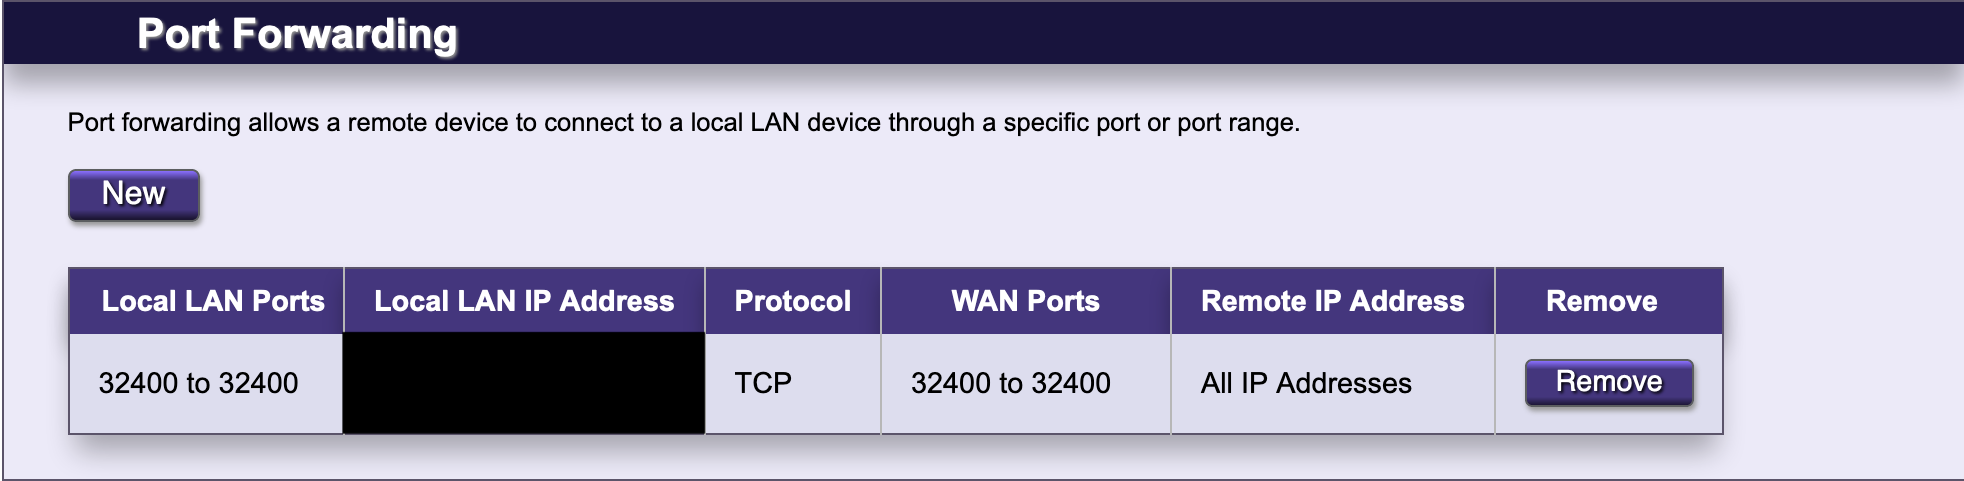 Router port
forwarding